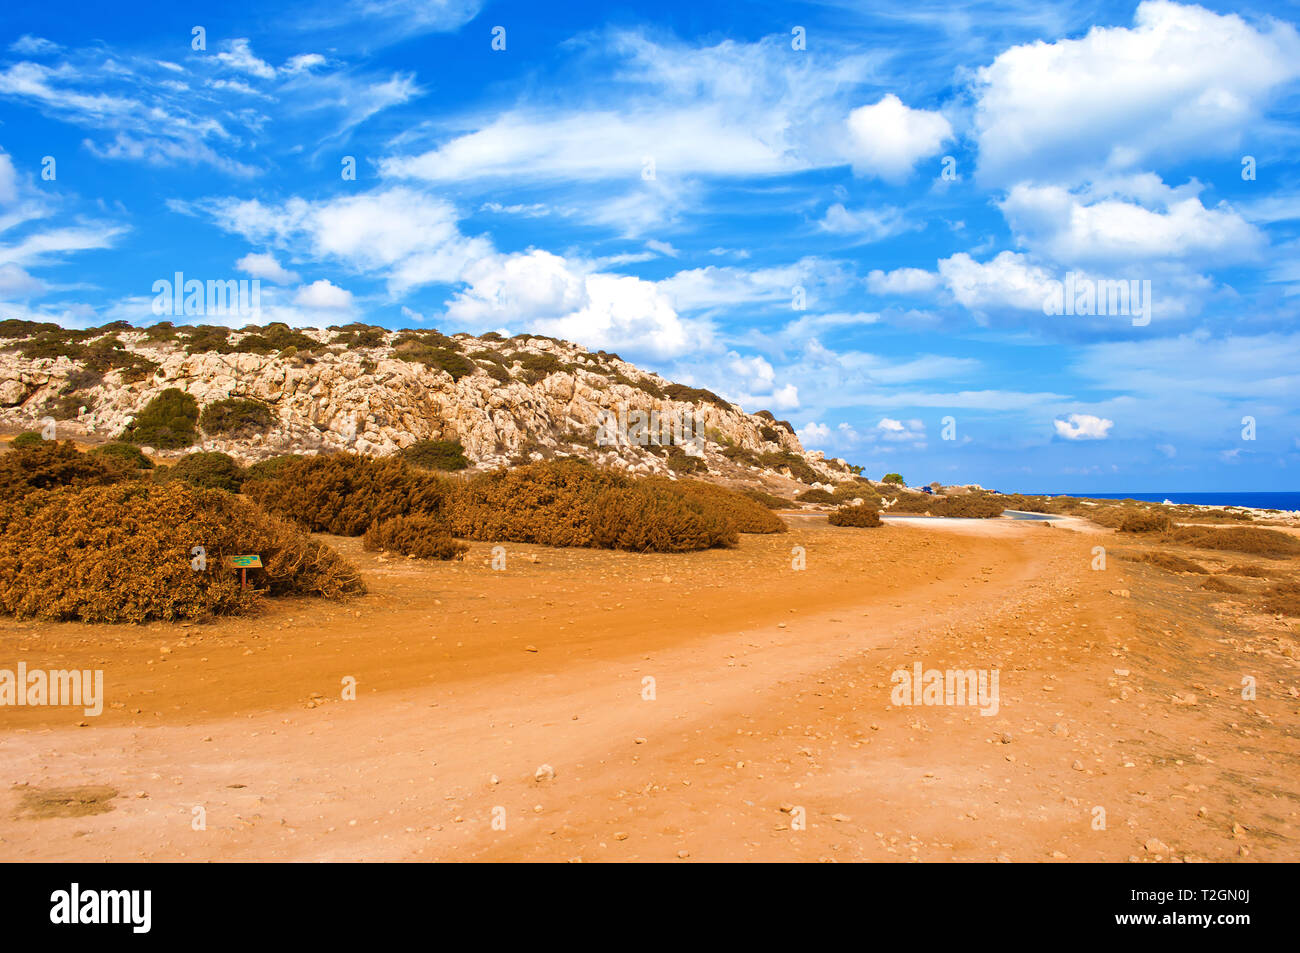 Bild von rauhem Kalkstein Küste in der Nähe von Kap Greco, Zypern. Cloudscape mit vielen weißen Wolken im Himmel, kargen orange sandigen Weg, Weite. Warm Stockfoto